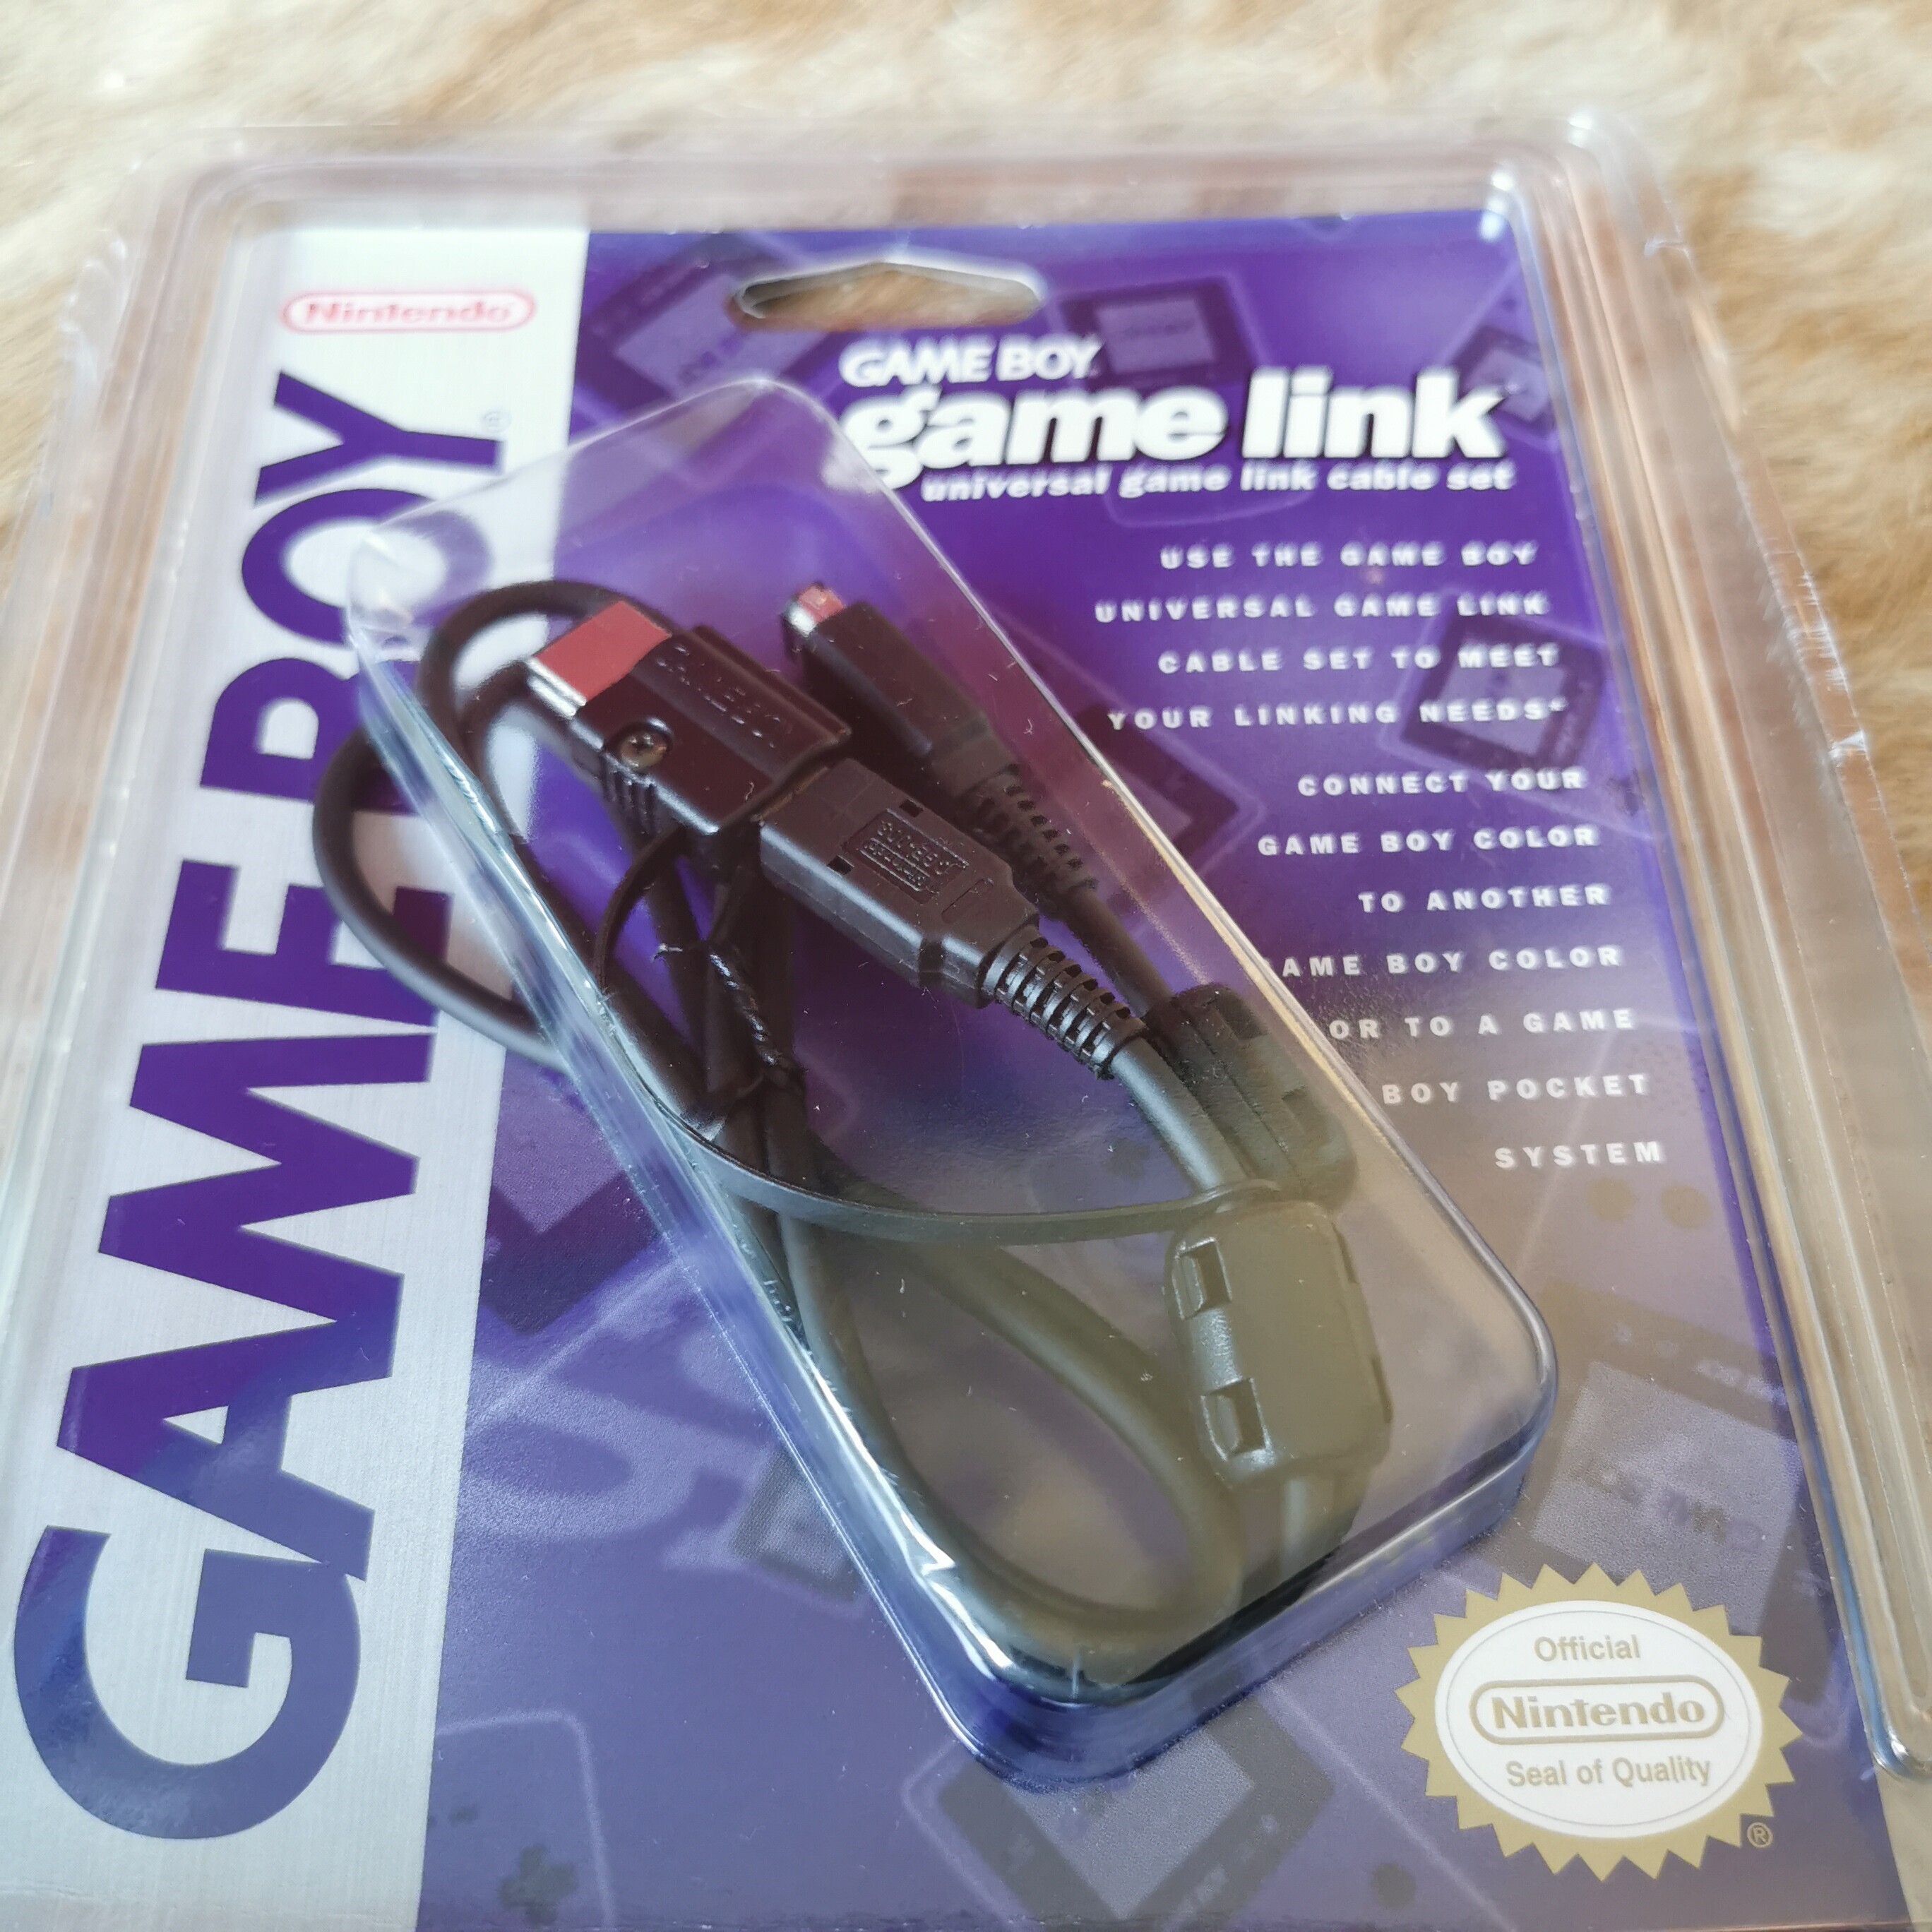  Nintendo Game Boy Game Link [US]